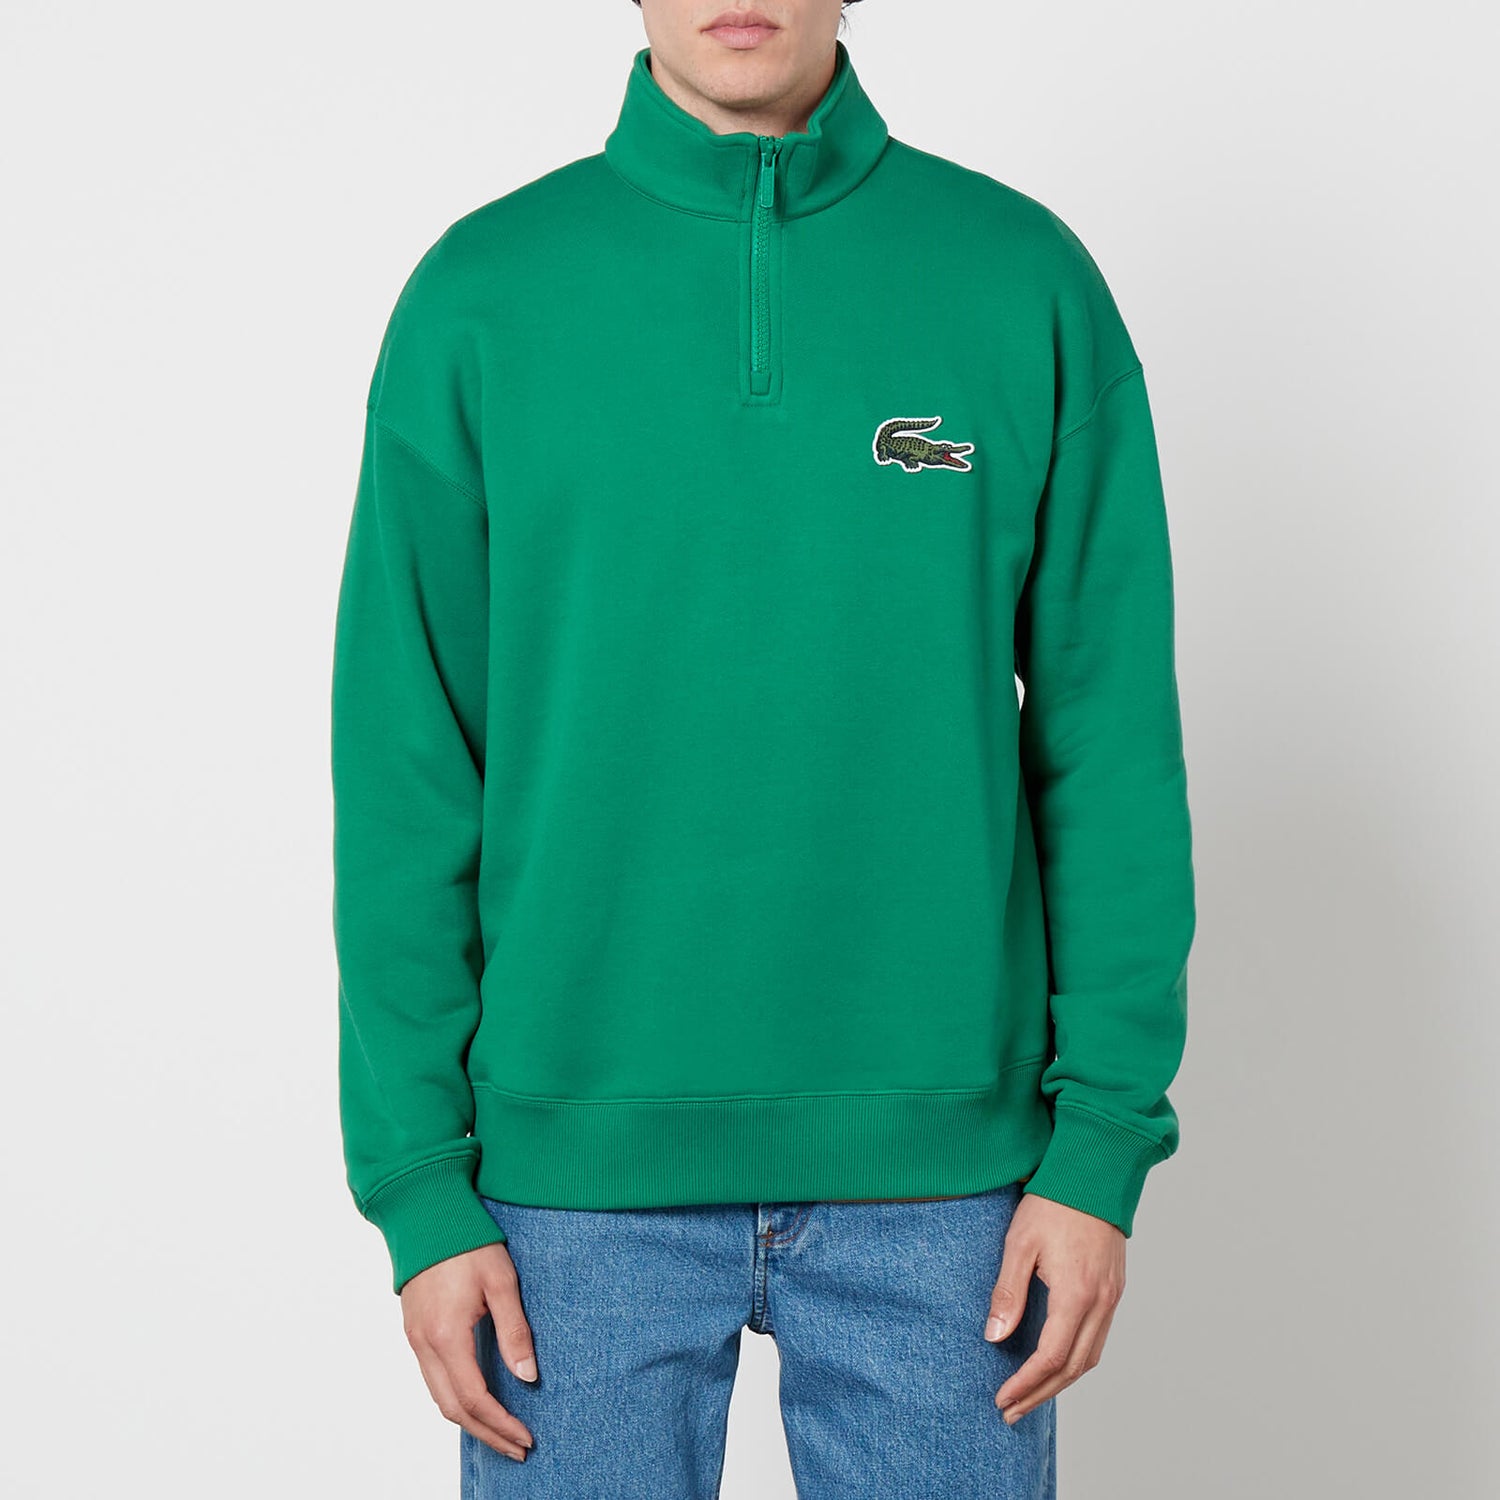 Lacoste DO Croc 80's Cotton-Blend Half-Zip Sweatshirt - S